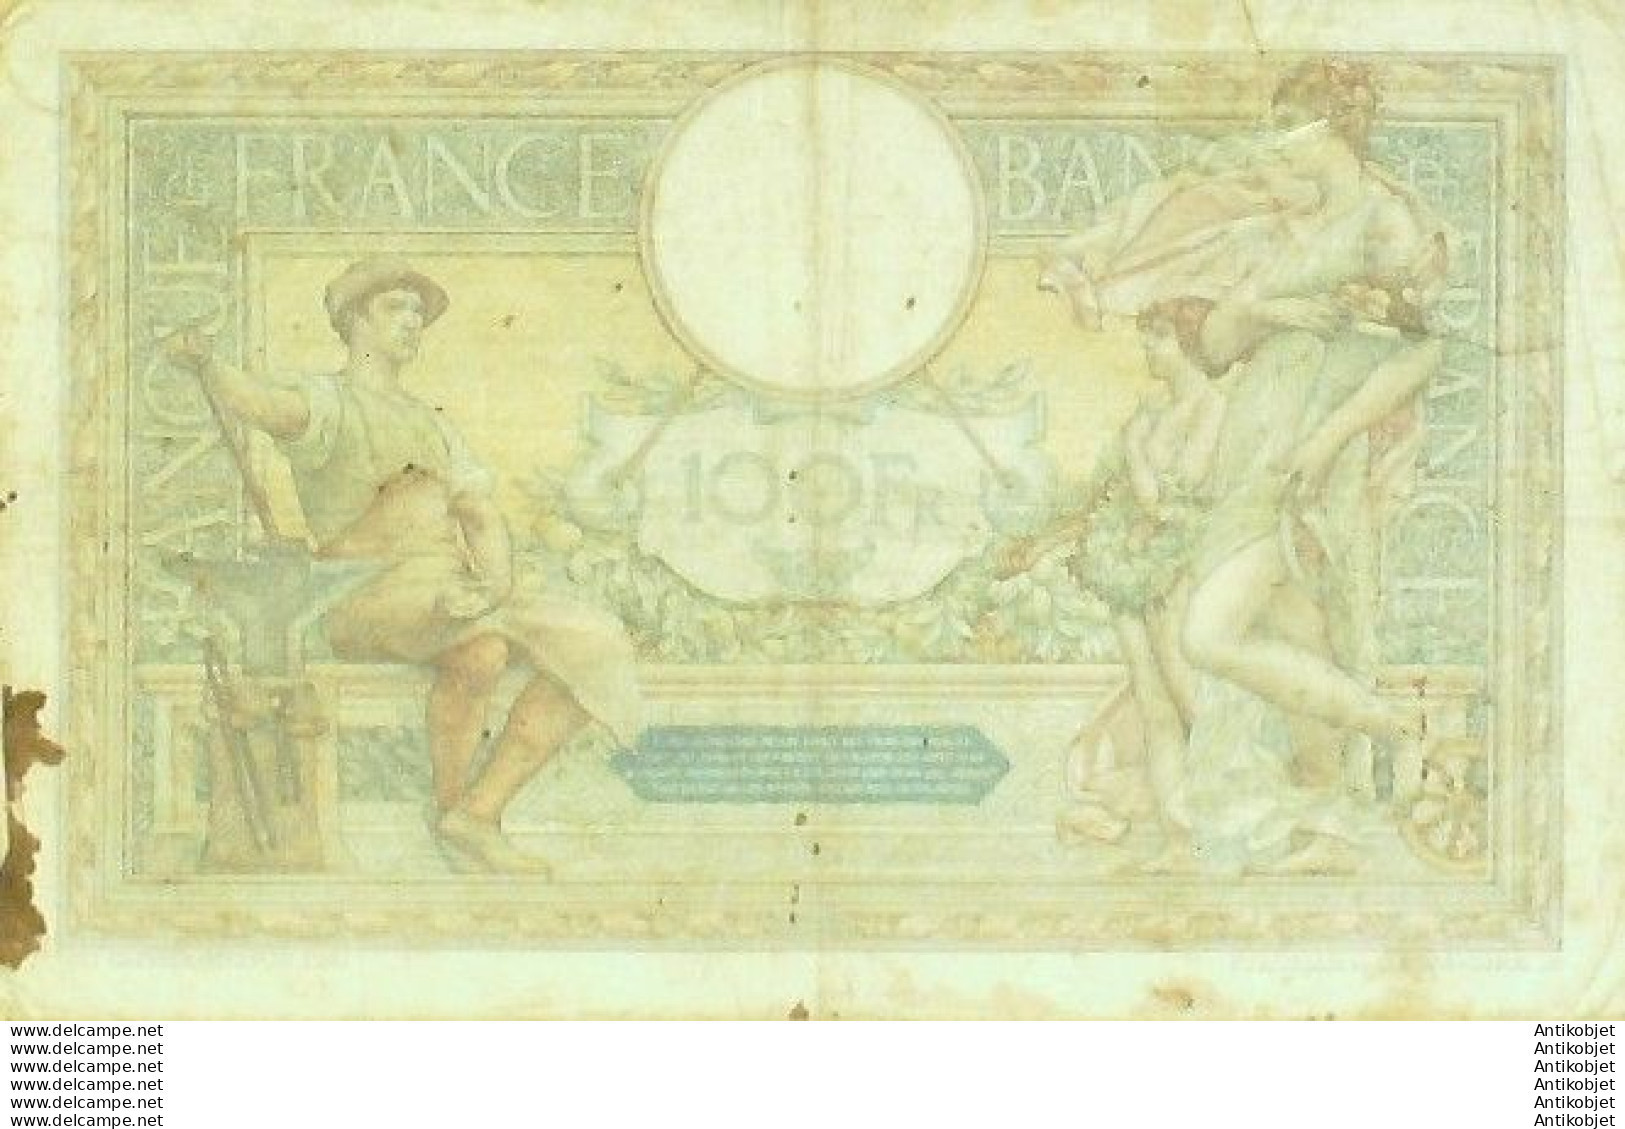 Billet Banque De France 100 Francs Luc Olivier Merson Grands Cartouches E.18=8=1925 TTB - 100 F 1908-1939 ''Luc Olivier Merson''